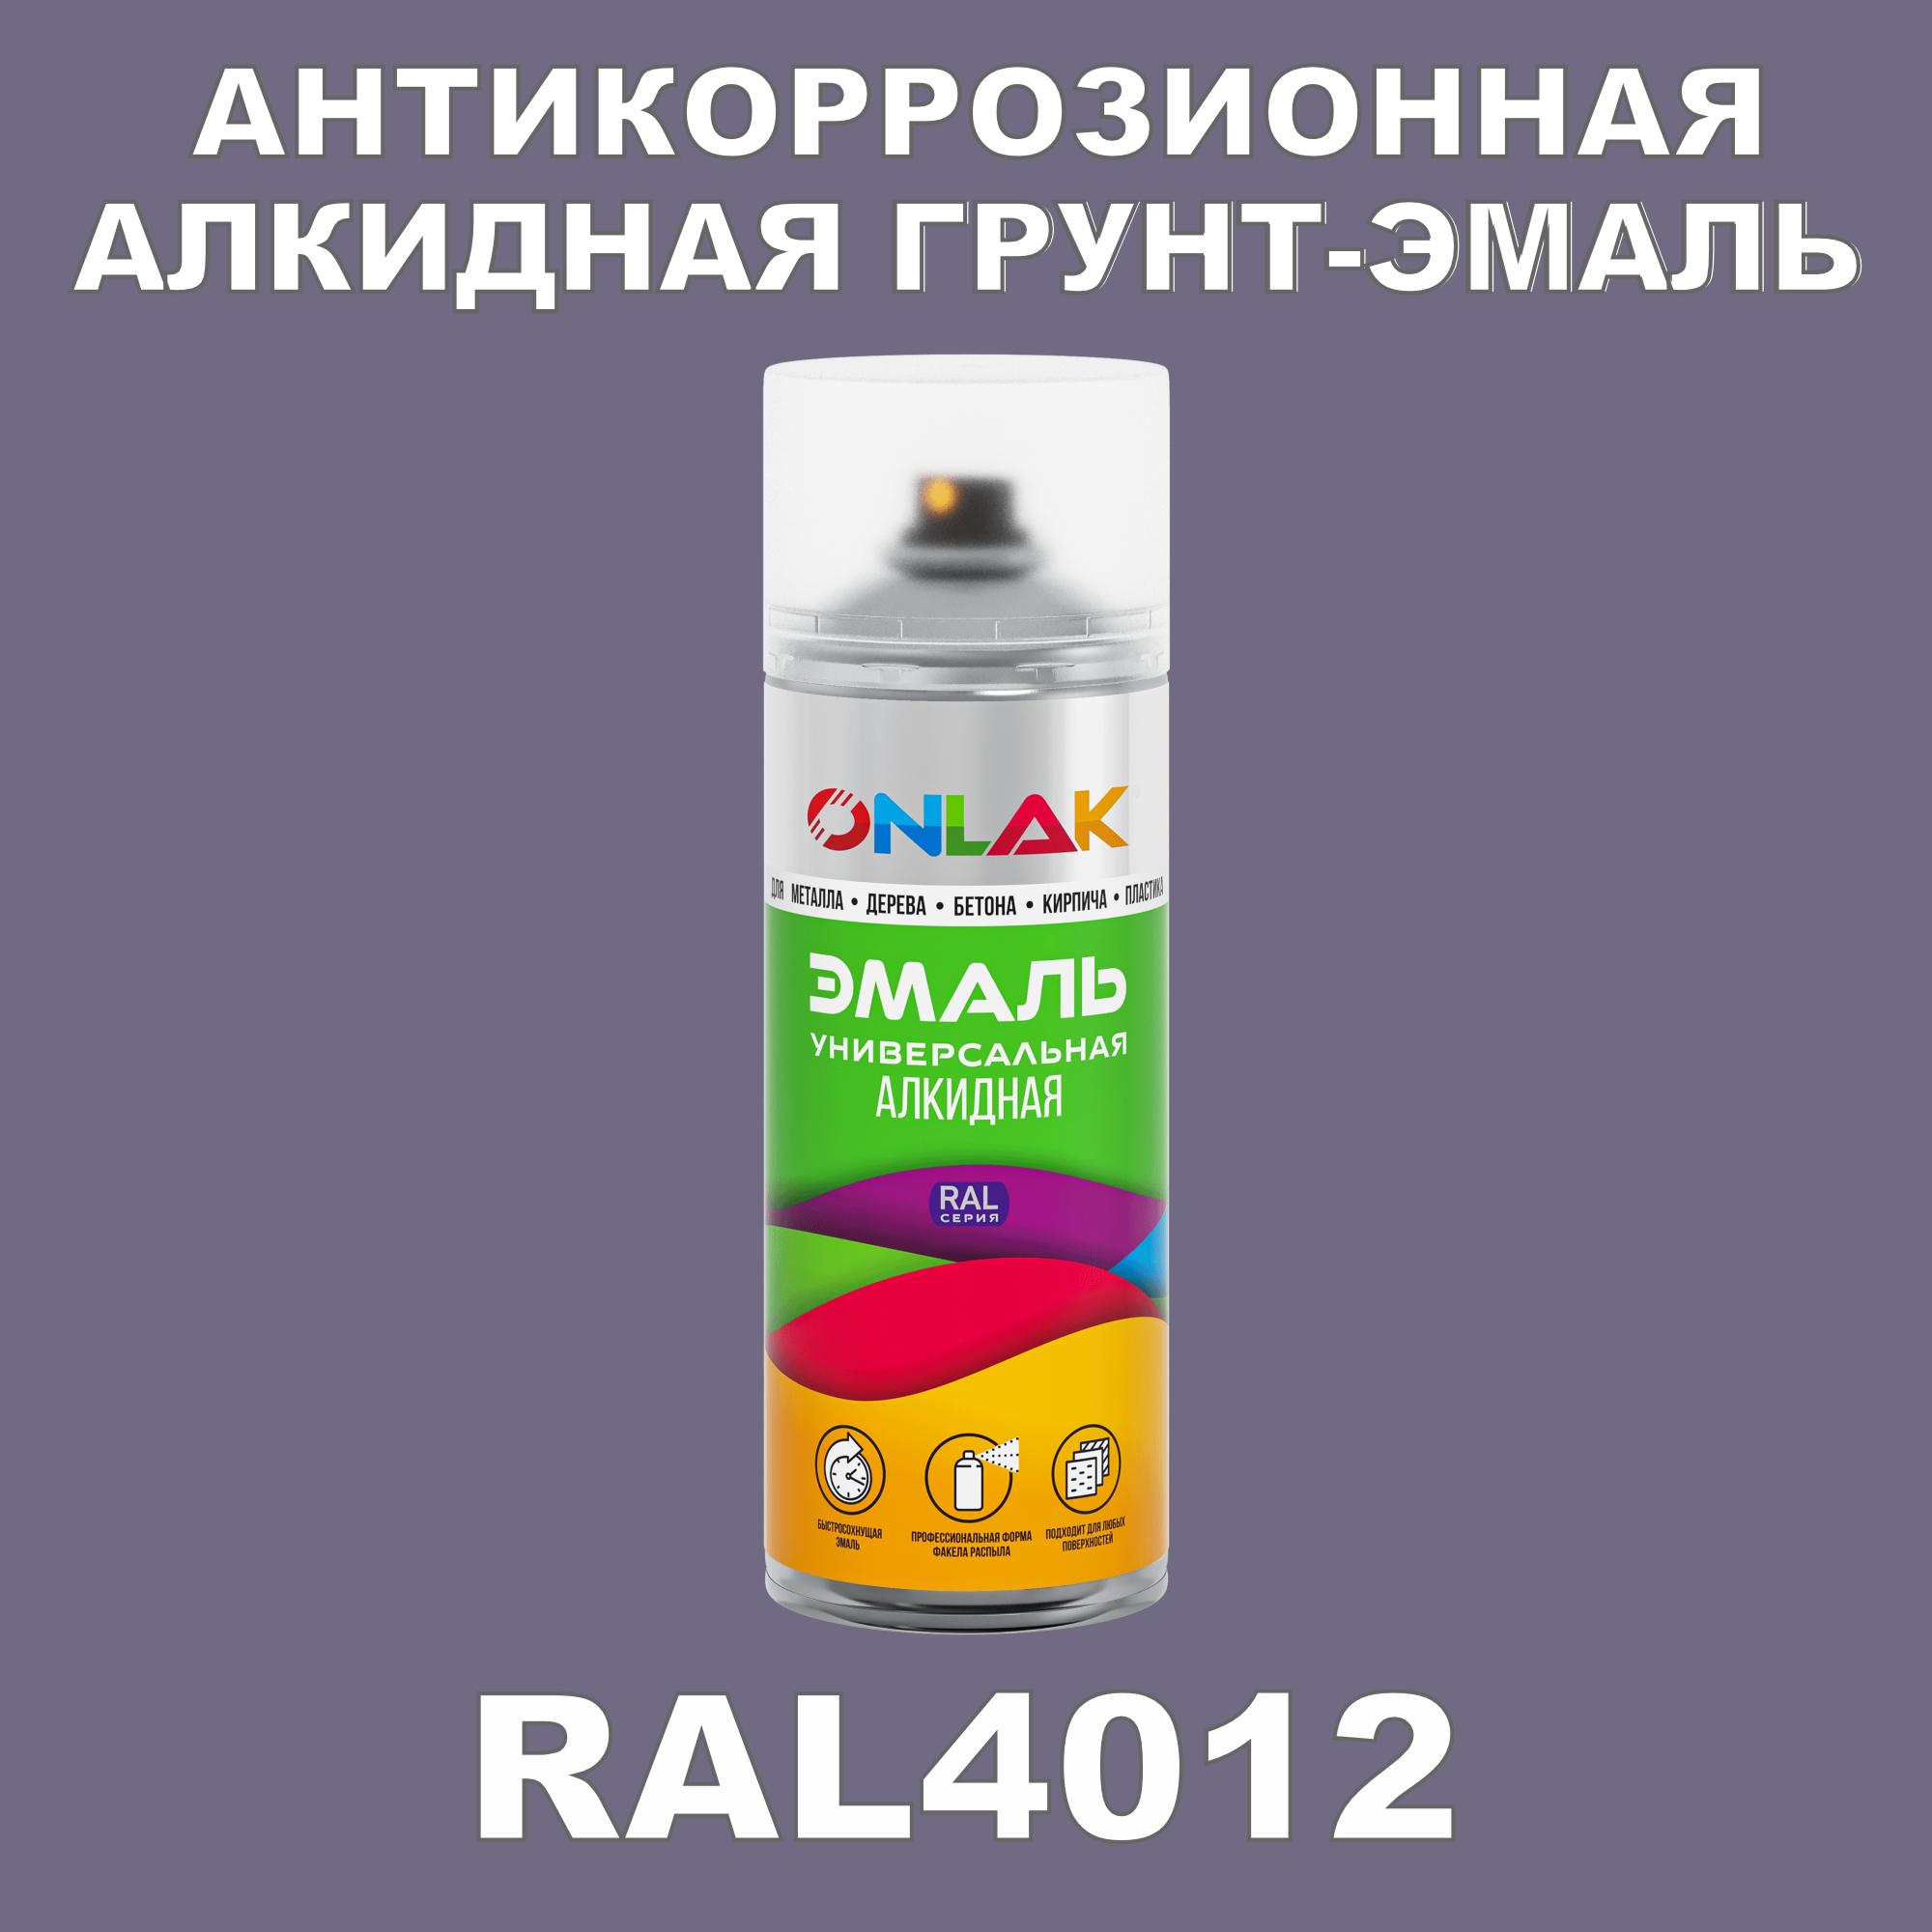 Антикоррозионная грунт-эмаль ONLAK RAL4012 полуматовая для металла и защиты от ржавчины